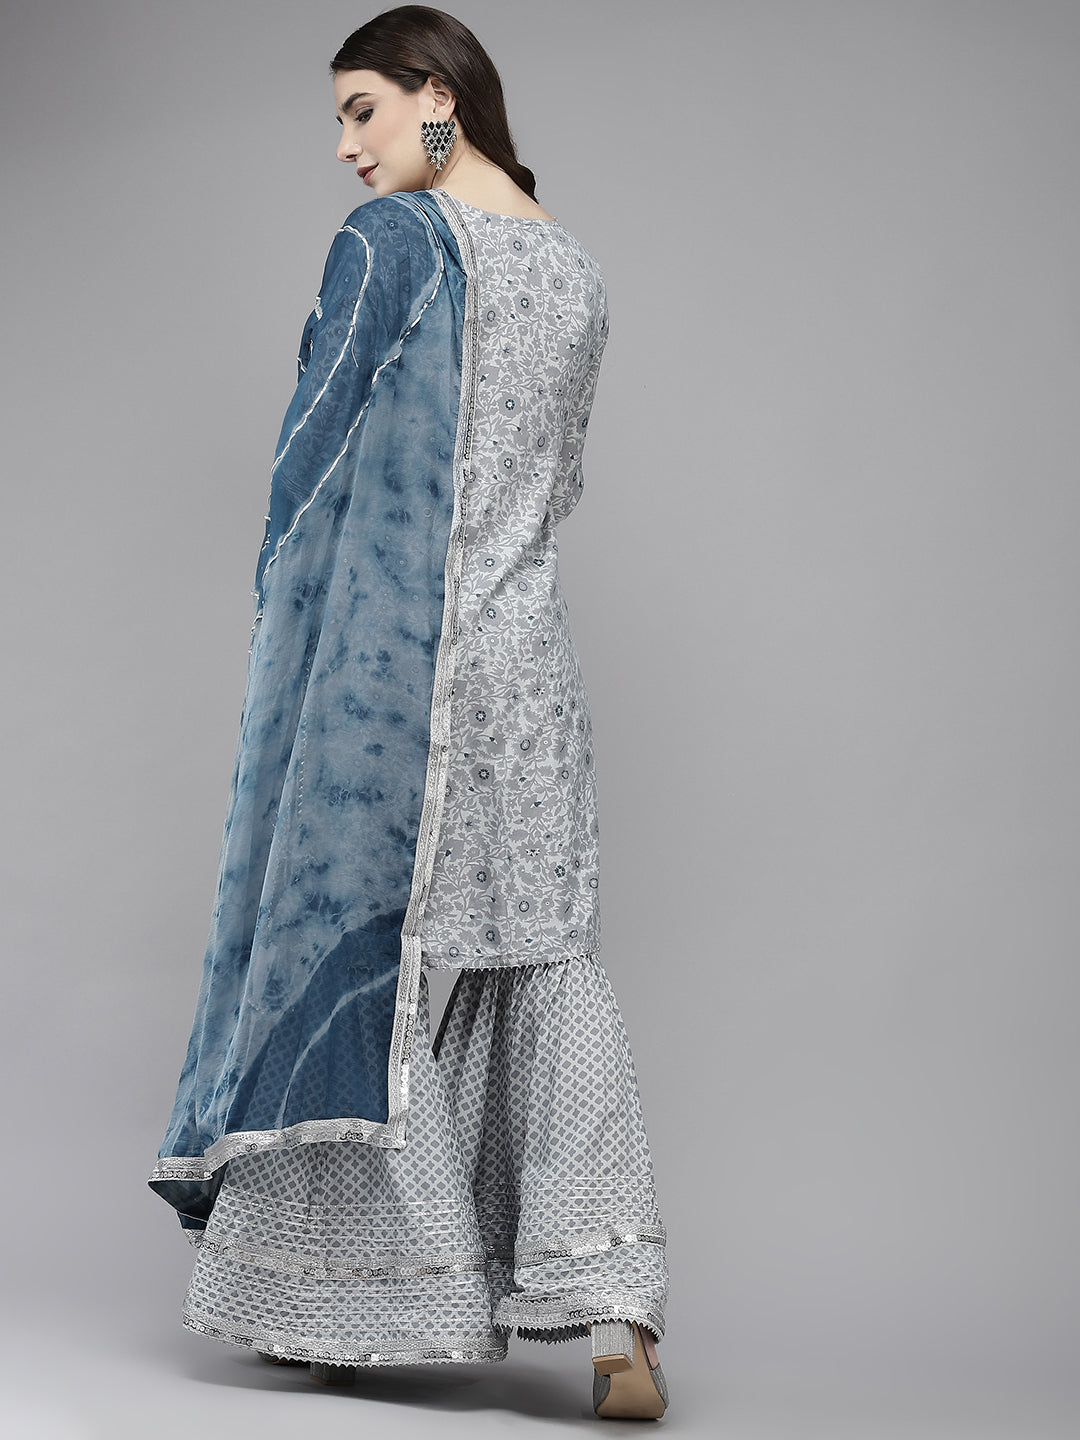 Ishin Women's Silk Blend Grey Embroidered A-Line Kurta Sharara Dupatta Set